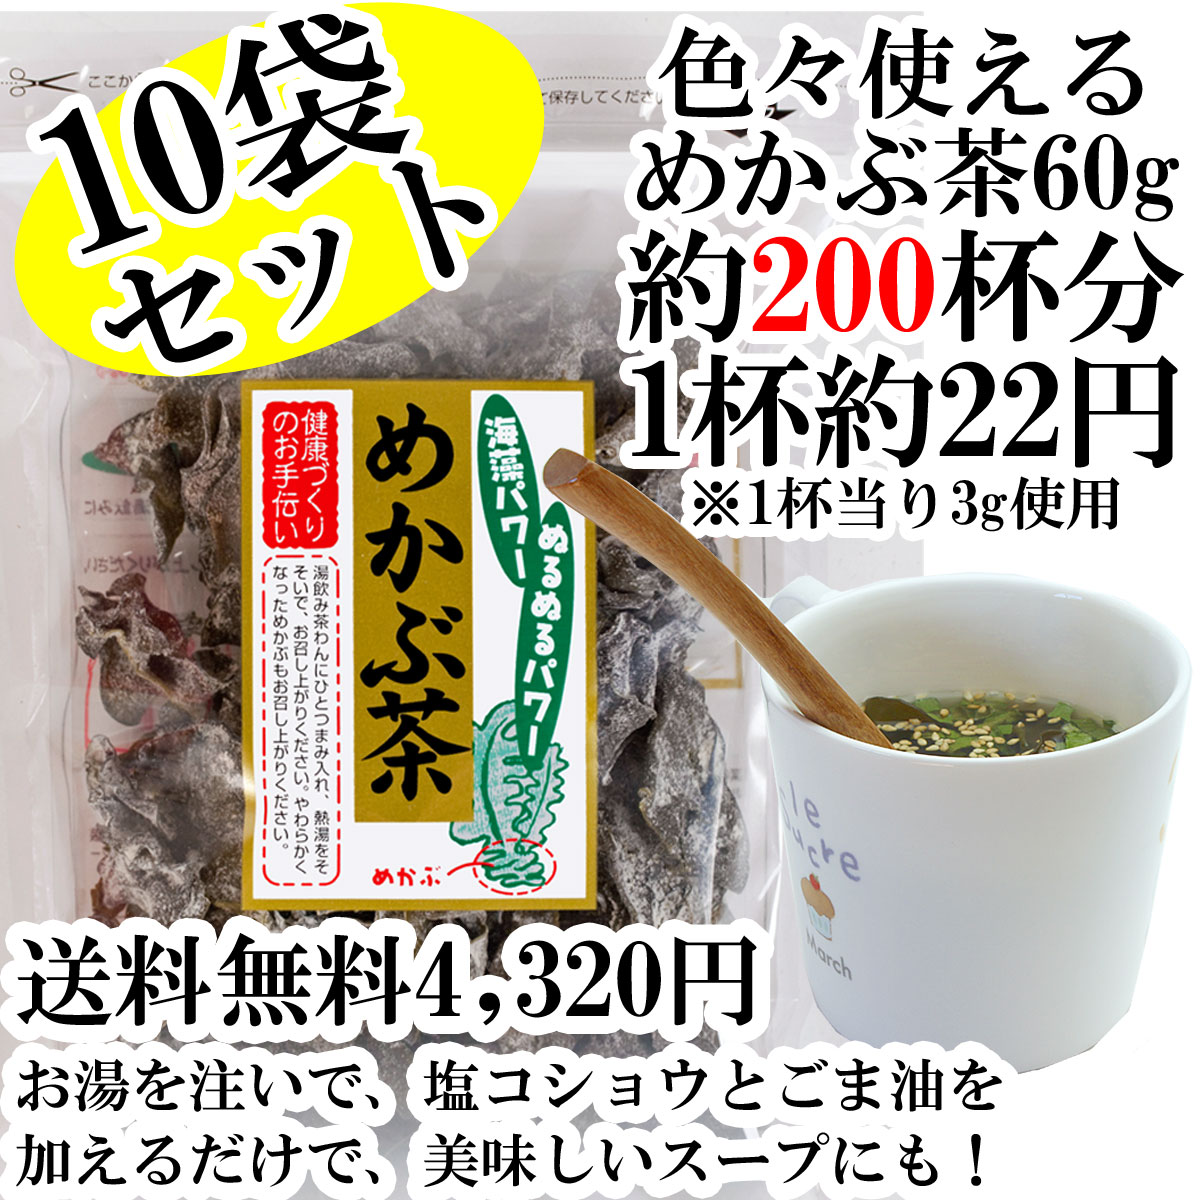 めかぶ茶 送料無料、10袋セット乾燥メカブのお茶食物繊維・フコイダンを含む健康茶。【RCP…...:ajizukuri:10000071